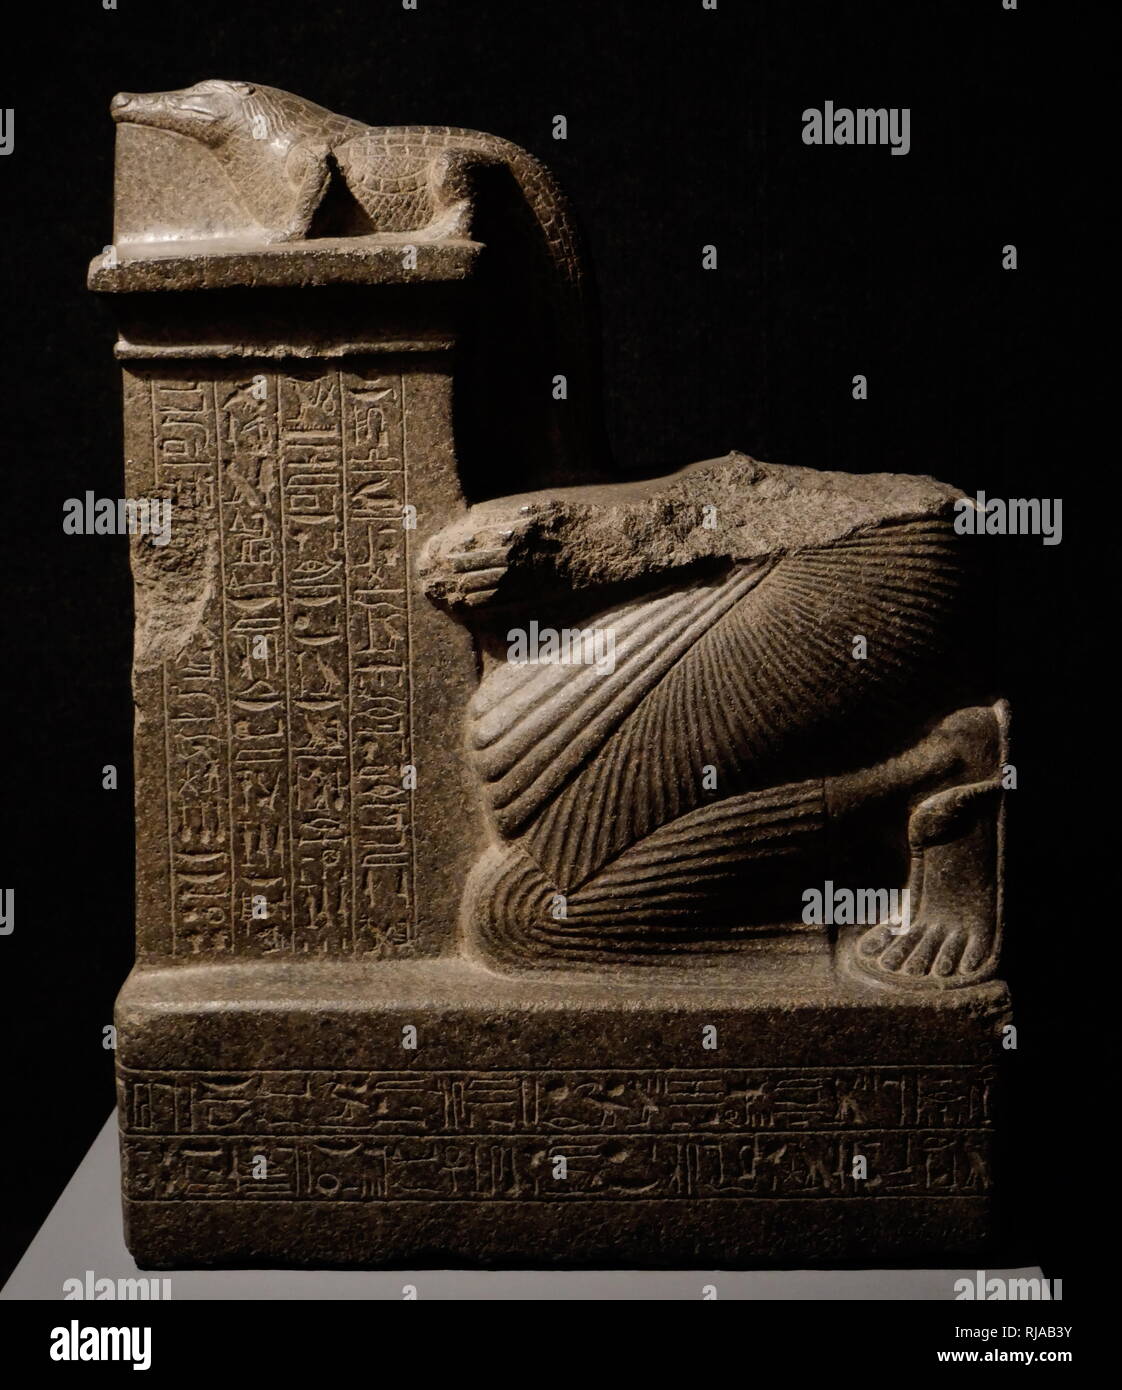 Statue votive illustrant Mayi offrant de la Dieu Crocodile Sobek. Nouveau Royaume. Sobek est un dieu du Nil qui a apporté la fertilité à la terre. Mayi, un responsable local de l'ancienne ville Sumenu. Le nouveau royaume de l'Égypte, également appelé l'Empire égyptien, est la période de l'histoire de l'Égypte ancienne entre le 16e siècle avant J.-C. et le 11e siècle avant J.-C. Banque D'Images